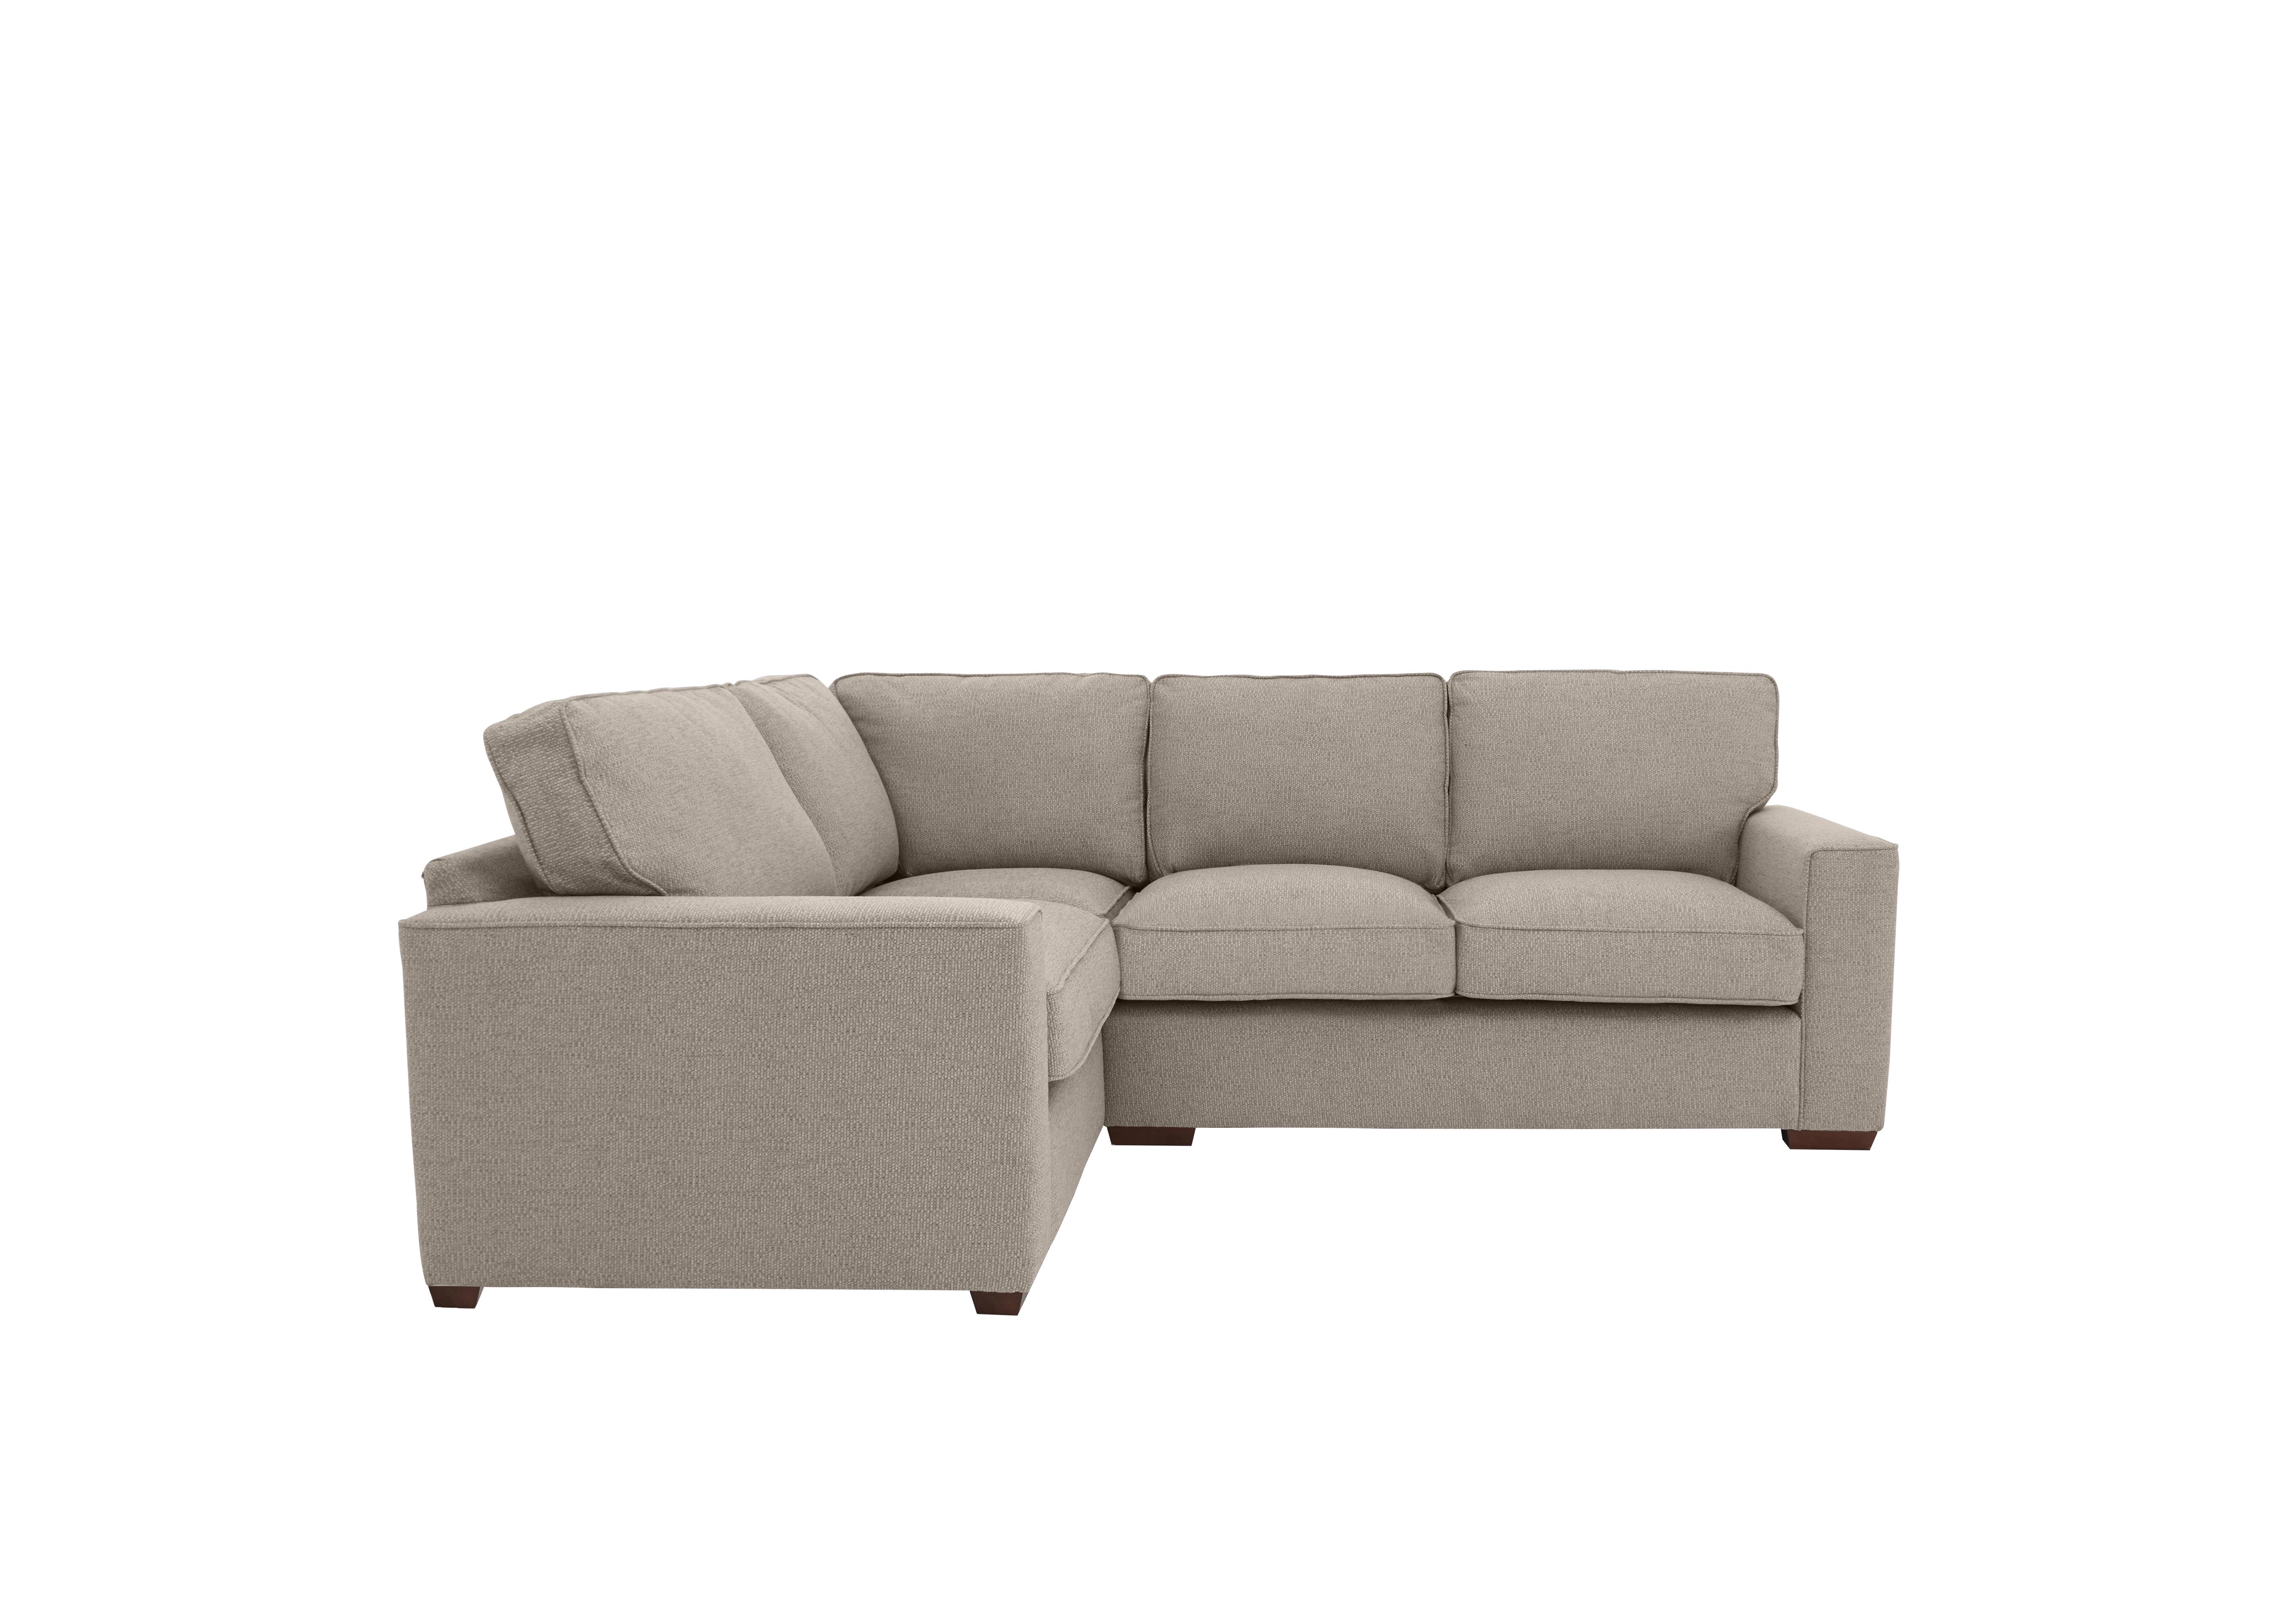 Cory Small Fabric Corner Classic Back Sofa in Dallas Natural on Furniture Village